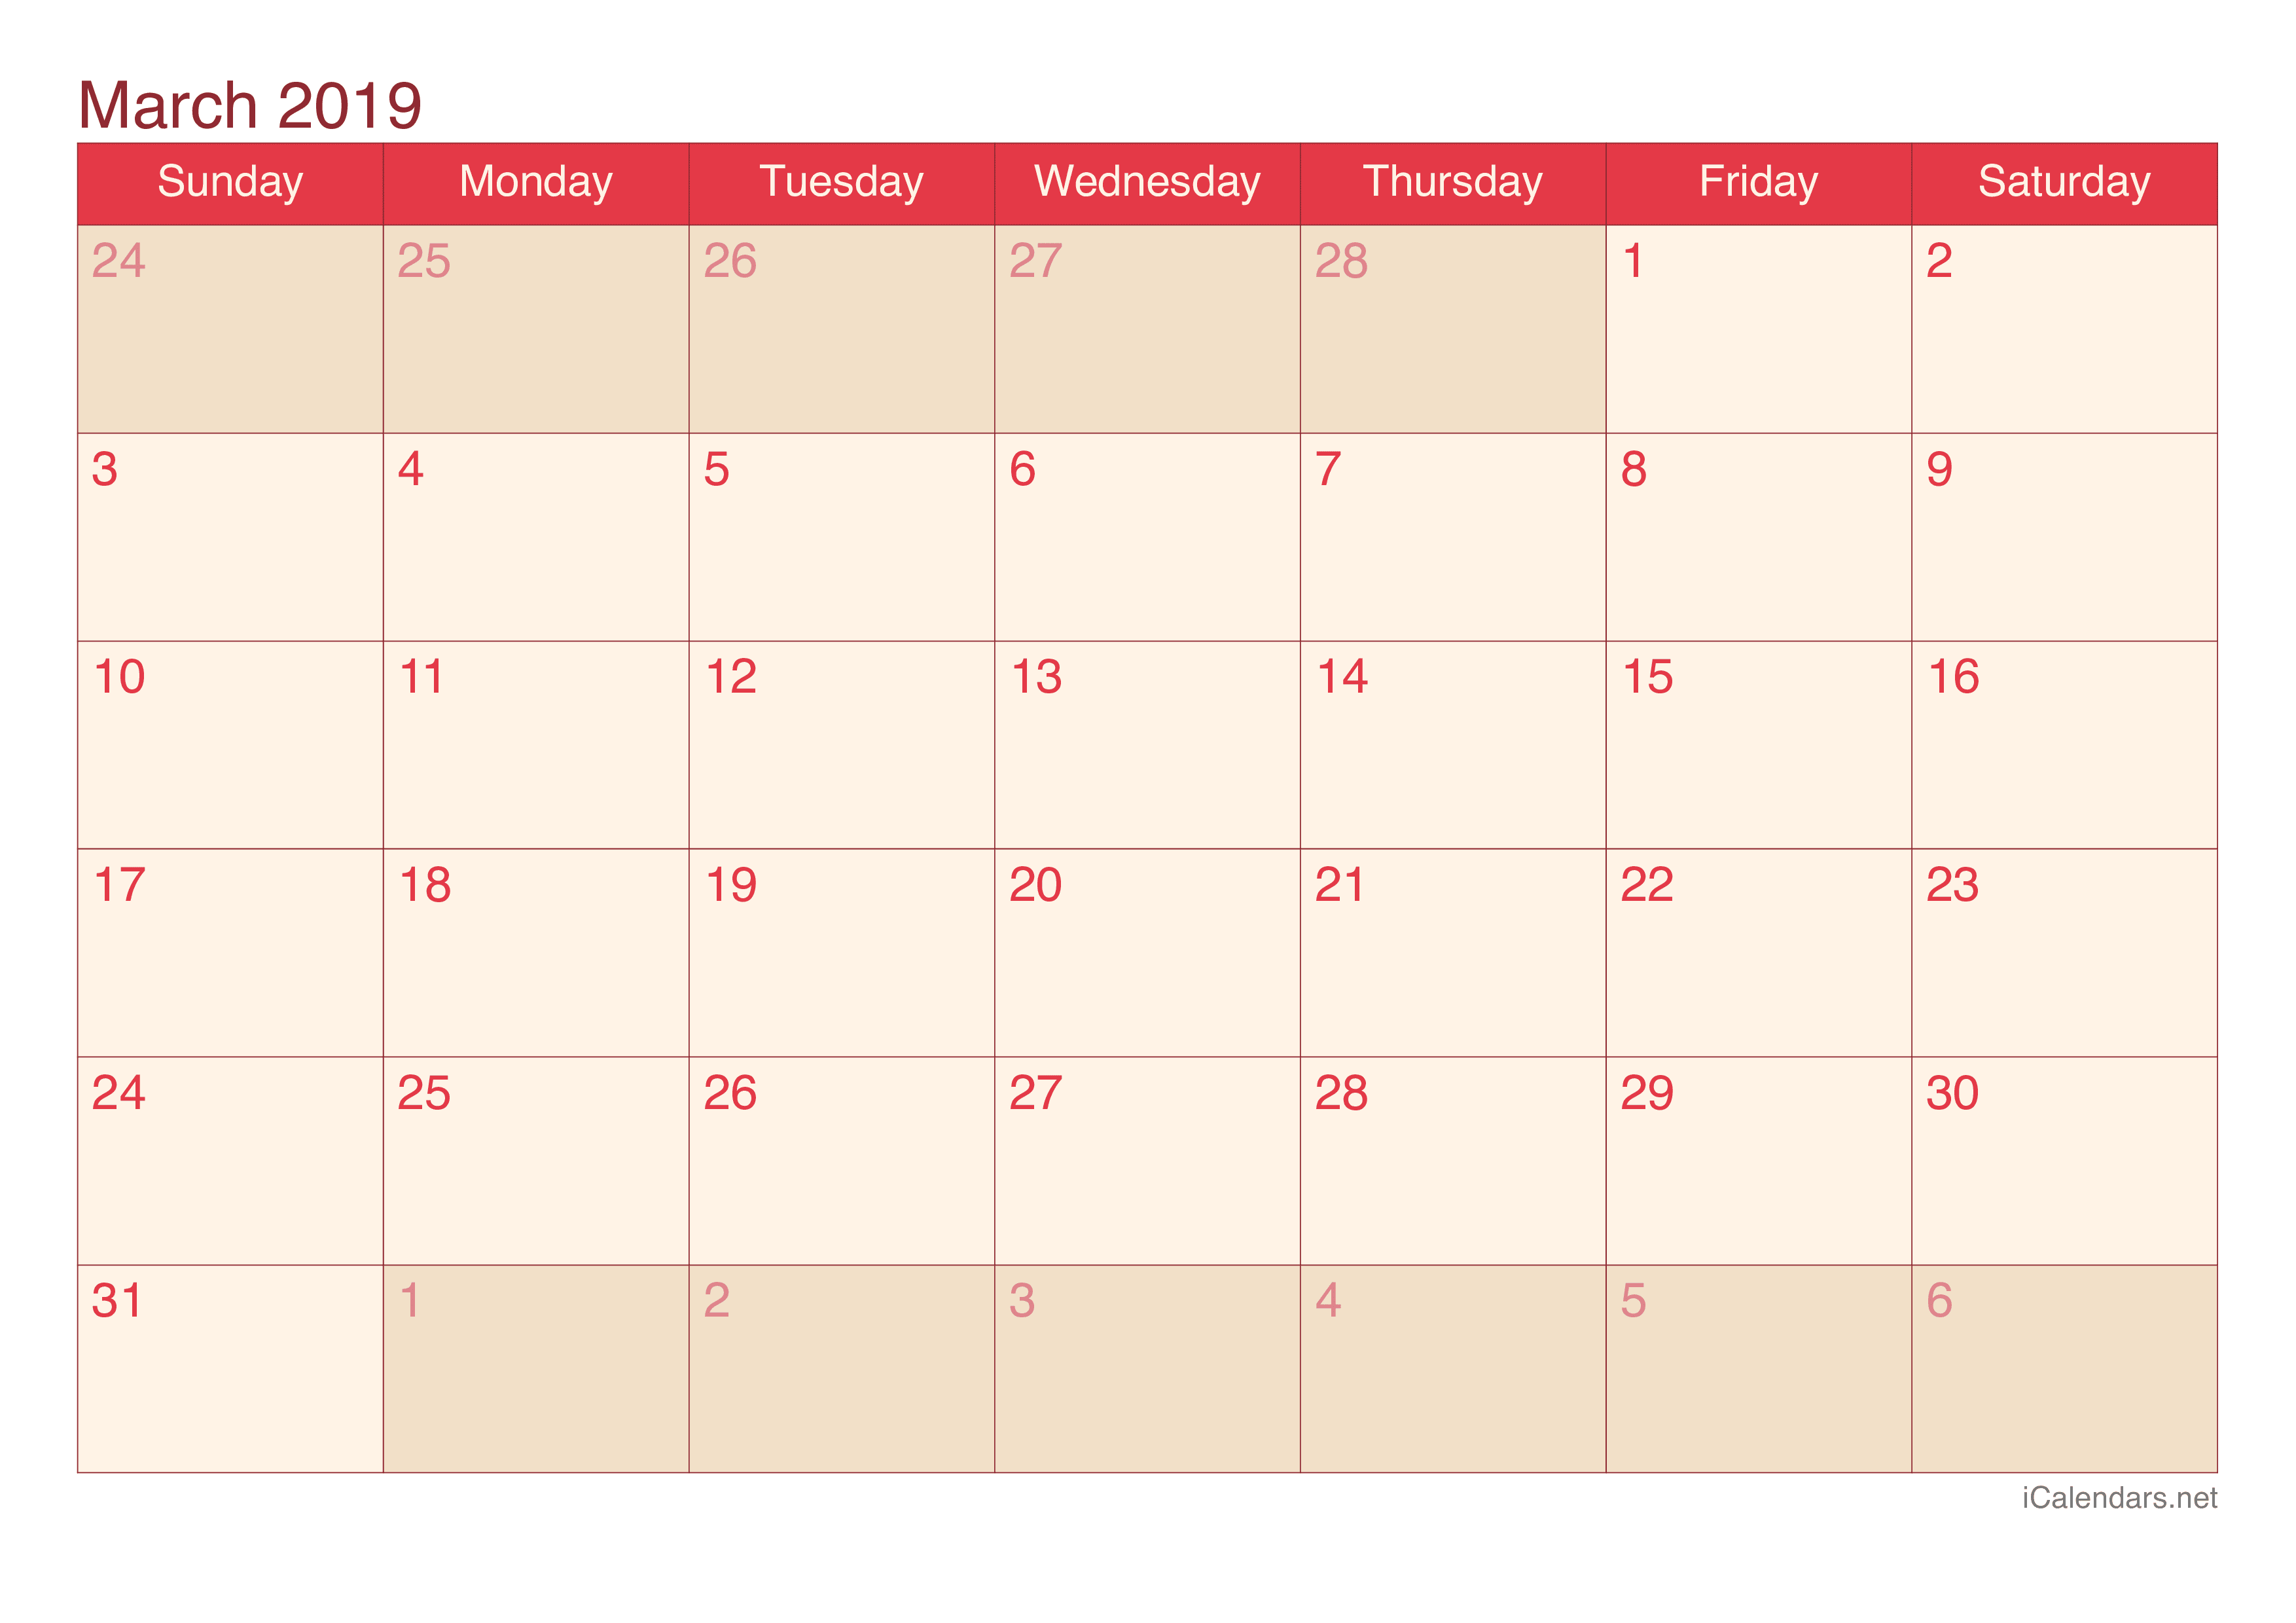 2019 March Calendar - Cherry